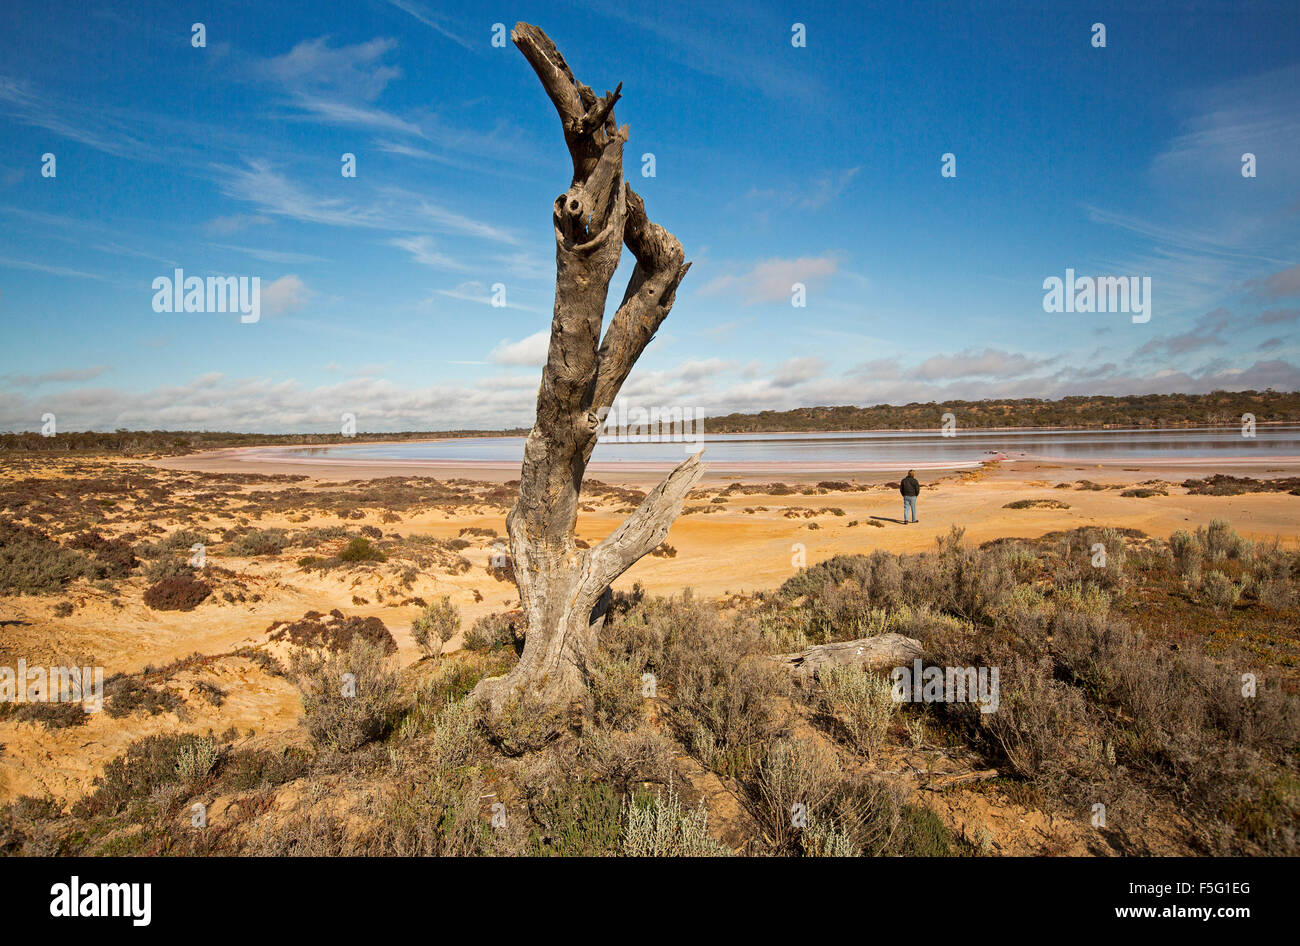 Mann in den Schatten gestellt durch riesige outback Landschaft, riesige toter Baum & See Crozier, riesigen Salzsee unter blauem Himmel im Murray-Sunset National Park Victoria Aust Stockfoto